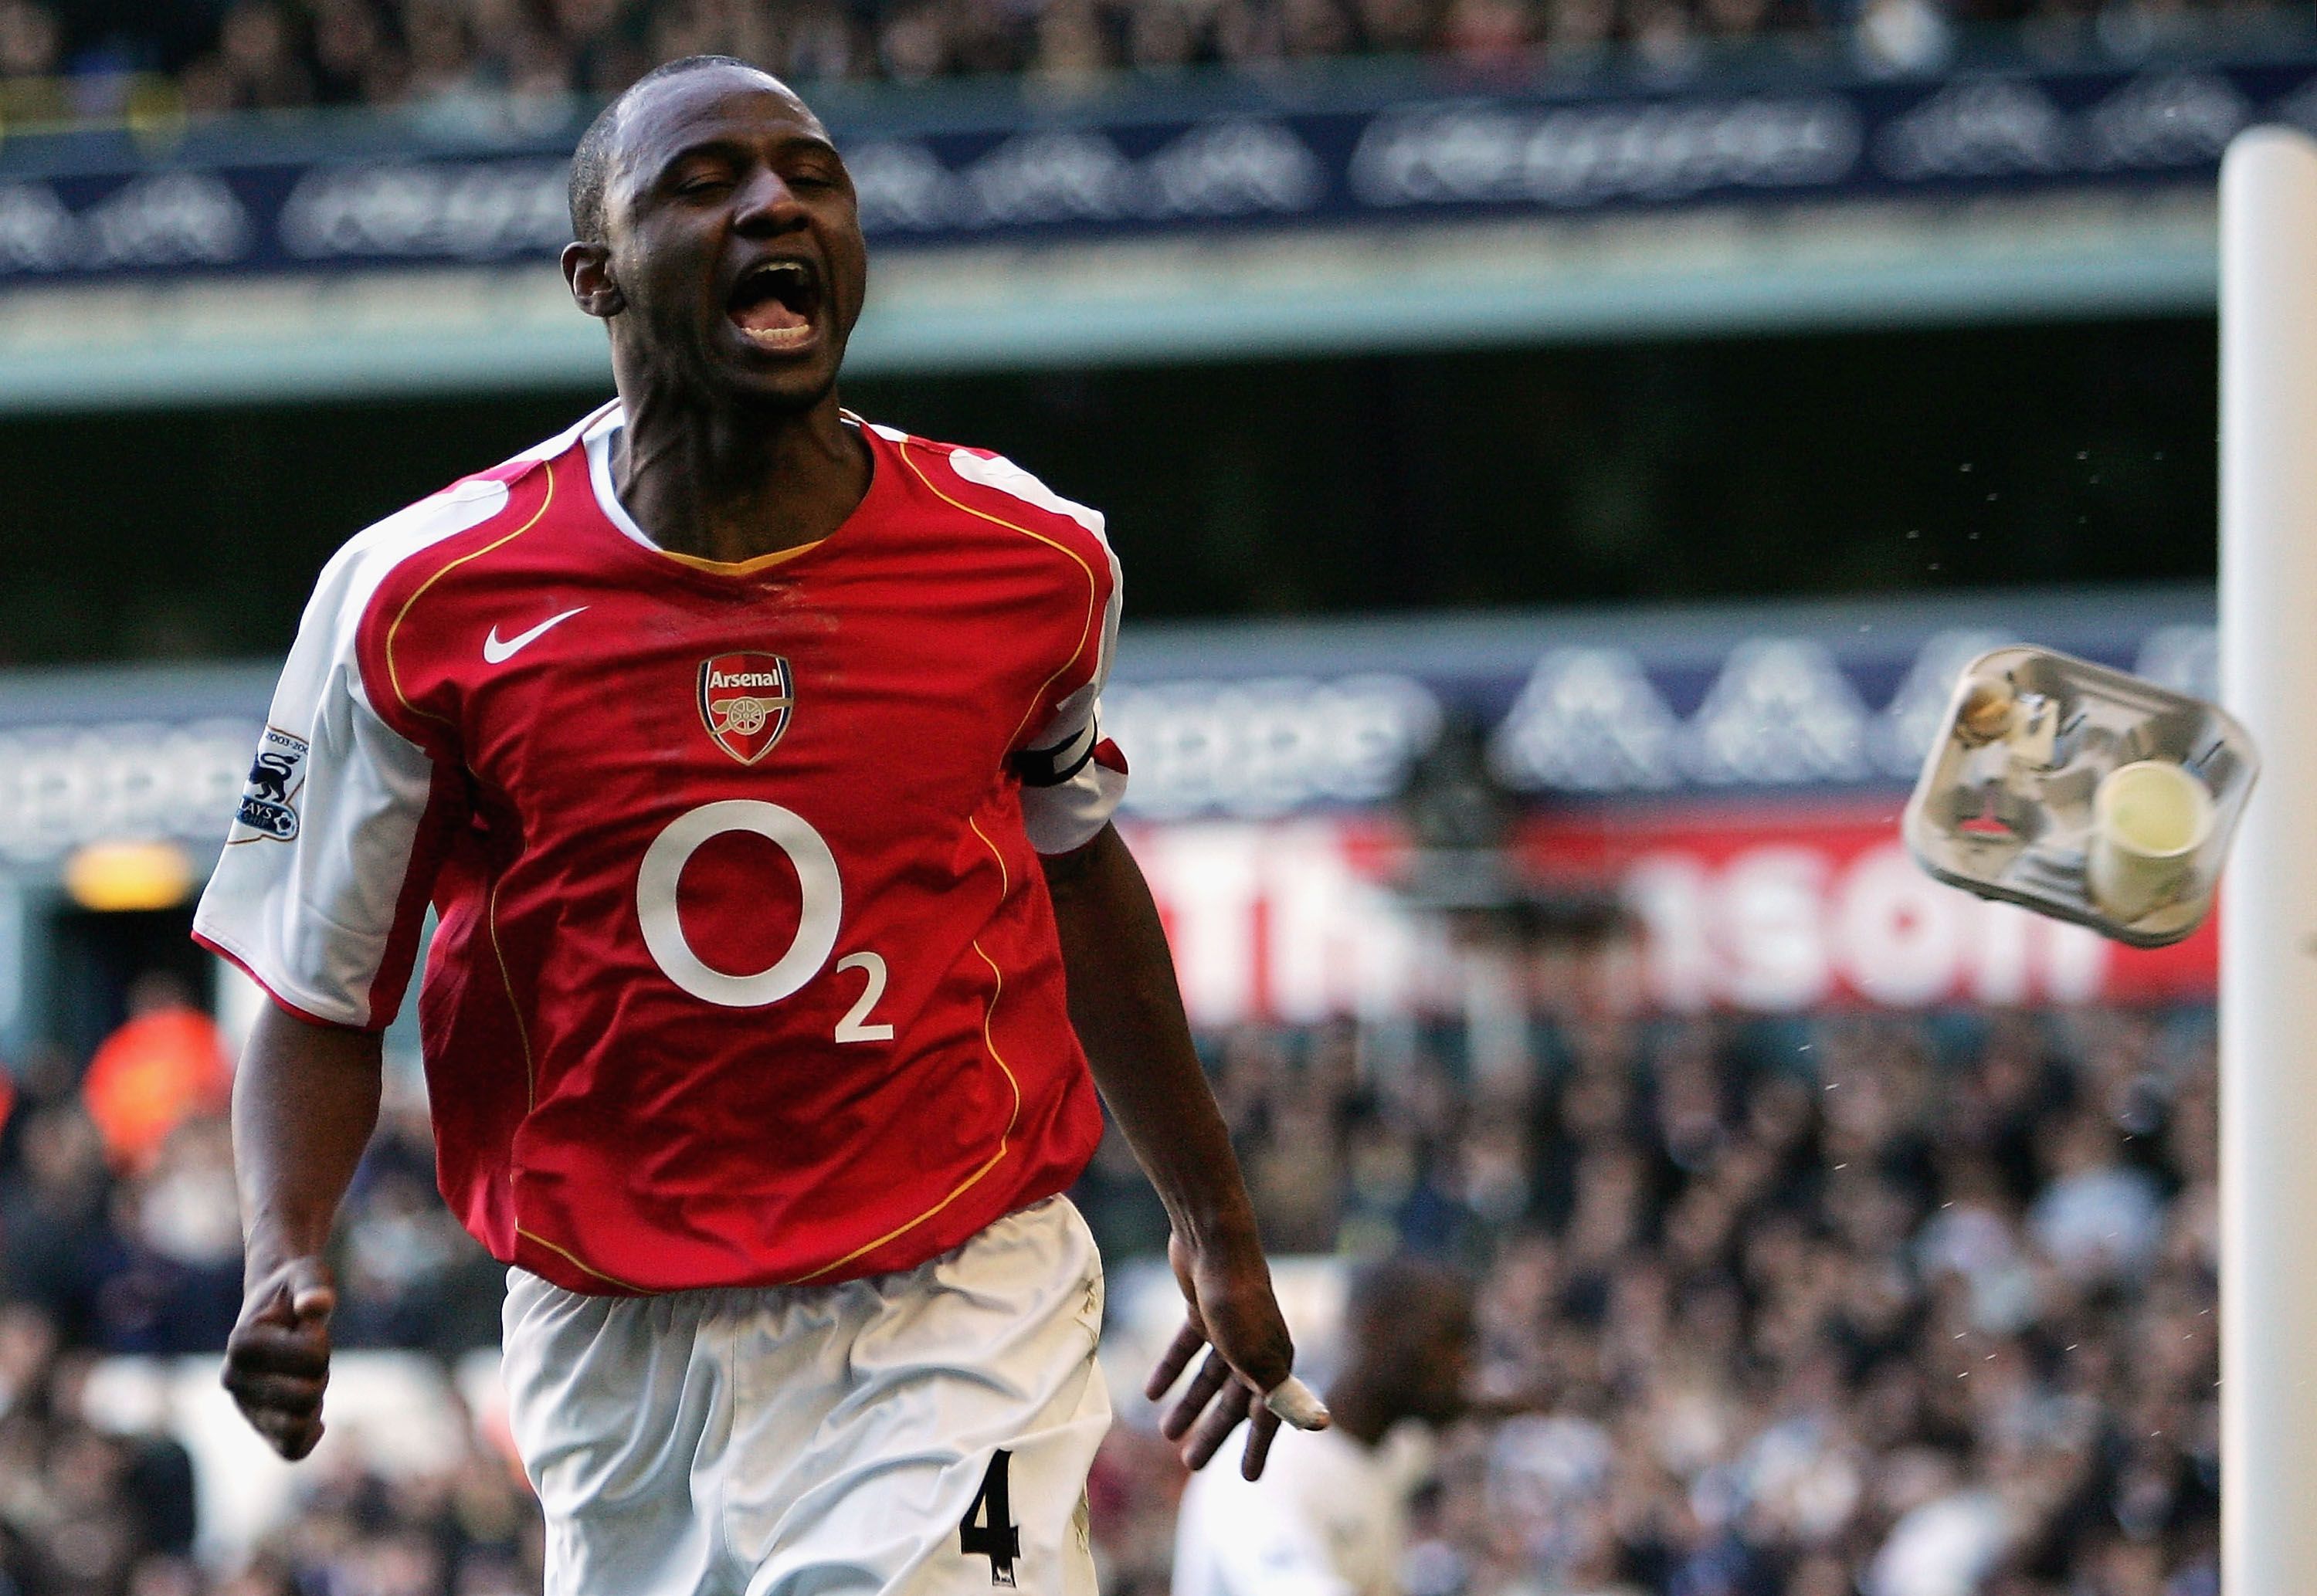 Patrick Vieira of Arsenal celebrates